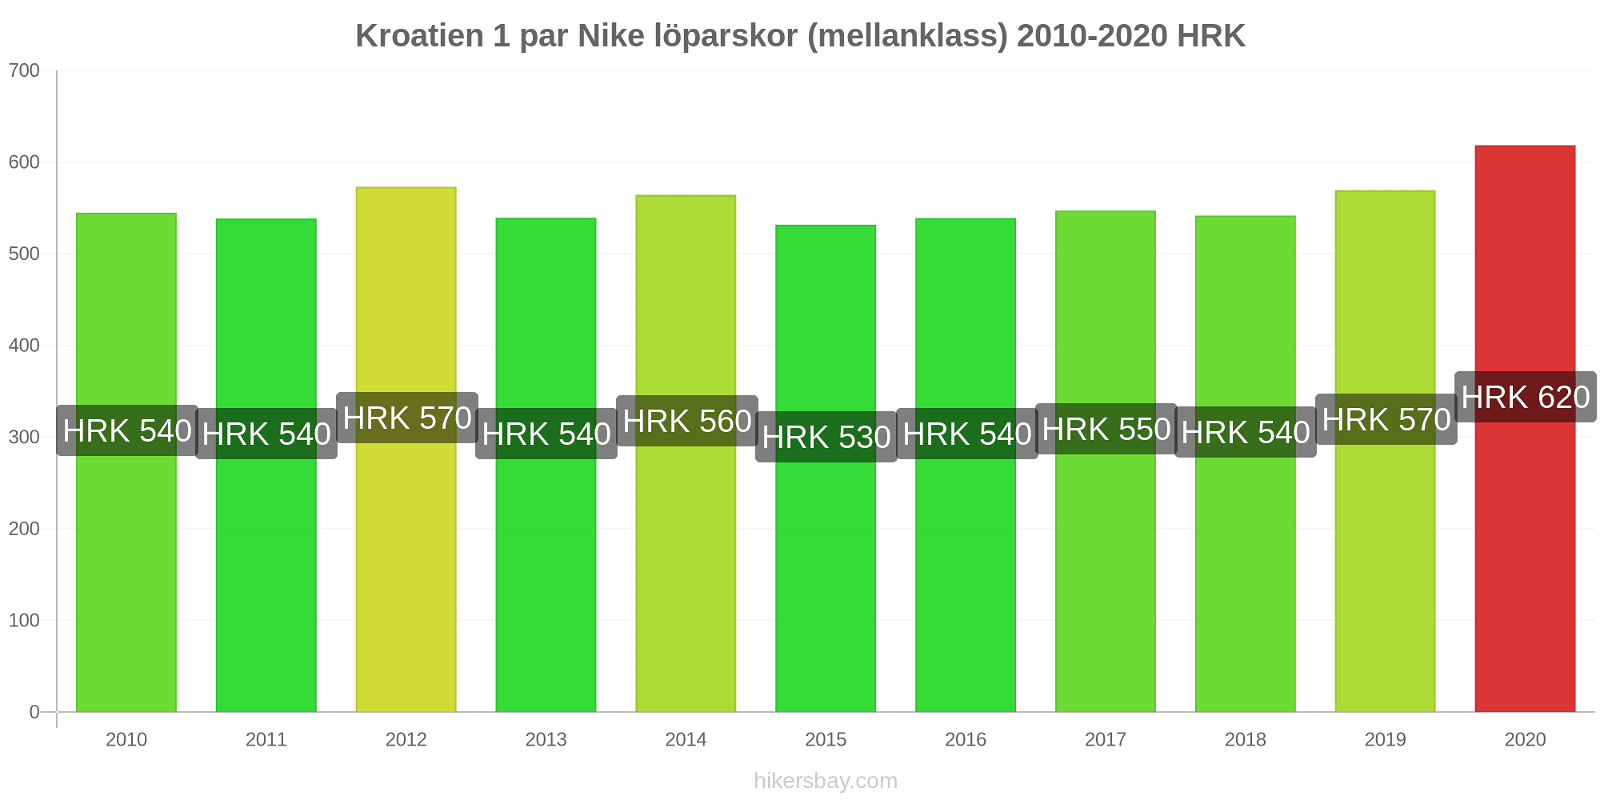 Kroatien prisförändringar 1 par Nike löparskor (mellanklass) hikersbay.com